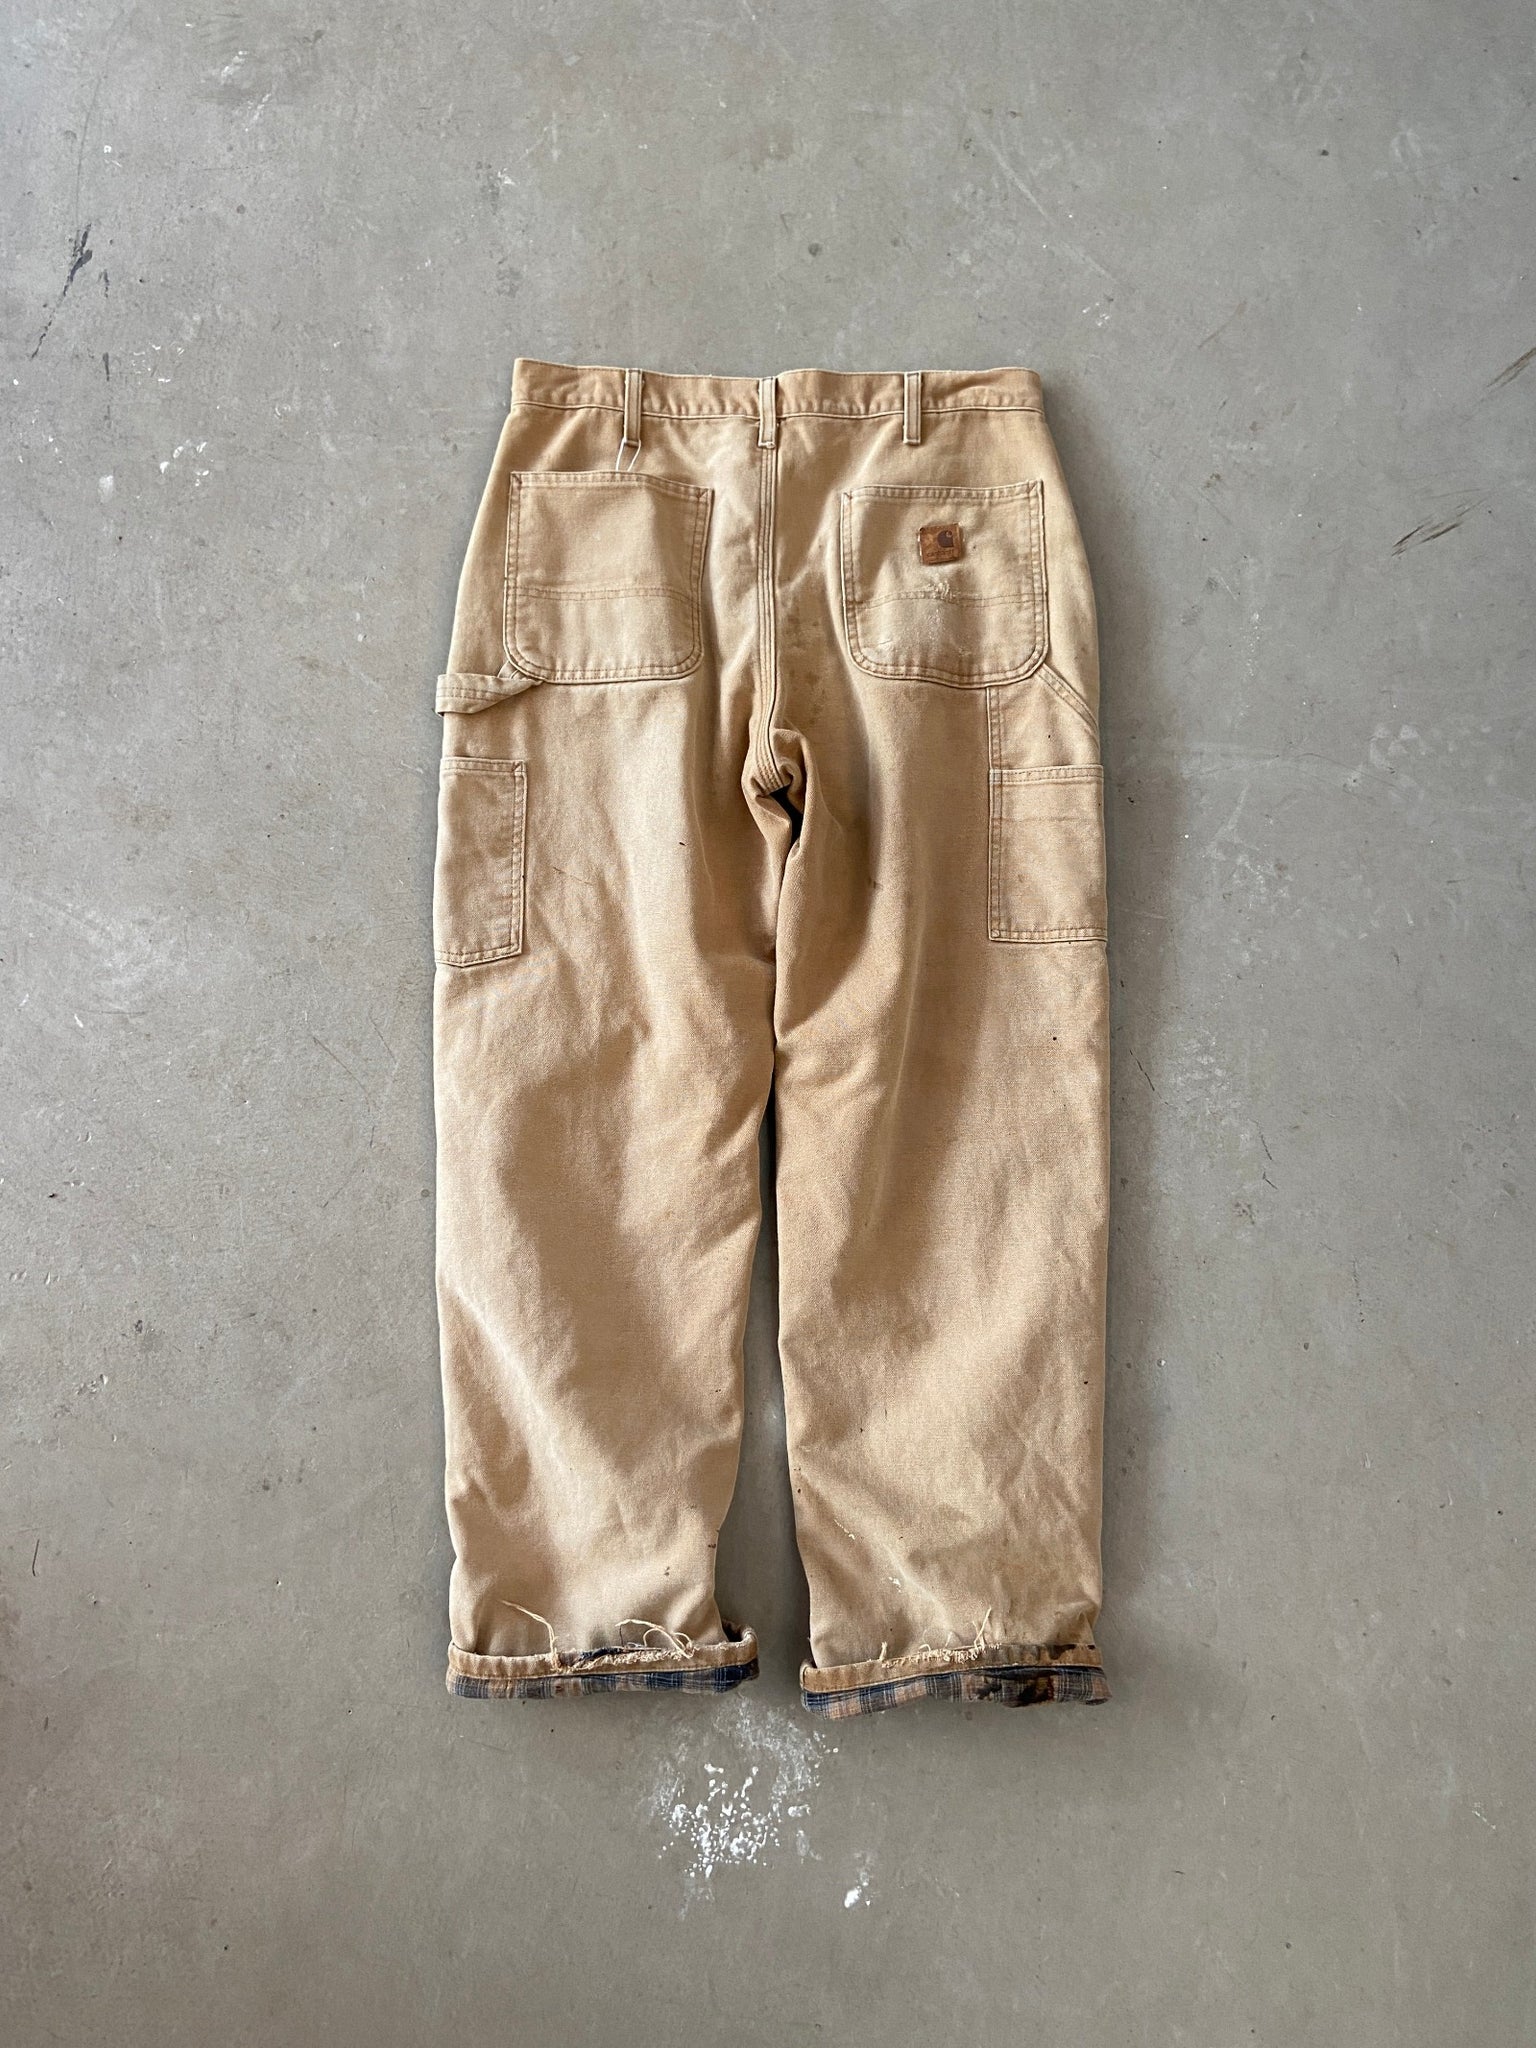 Carhartt Lined Carpenter Pants - 34 x 30